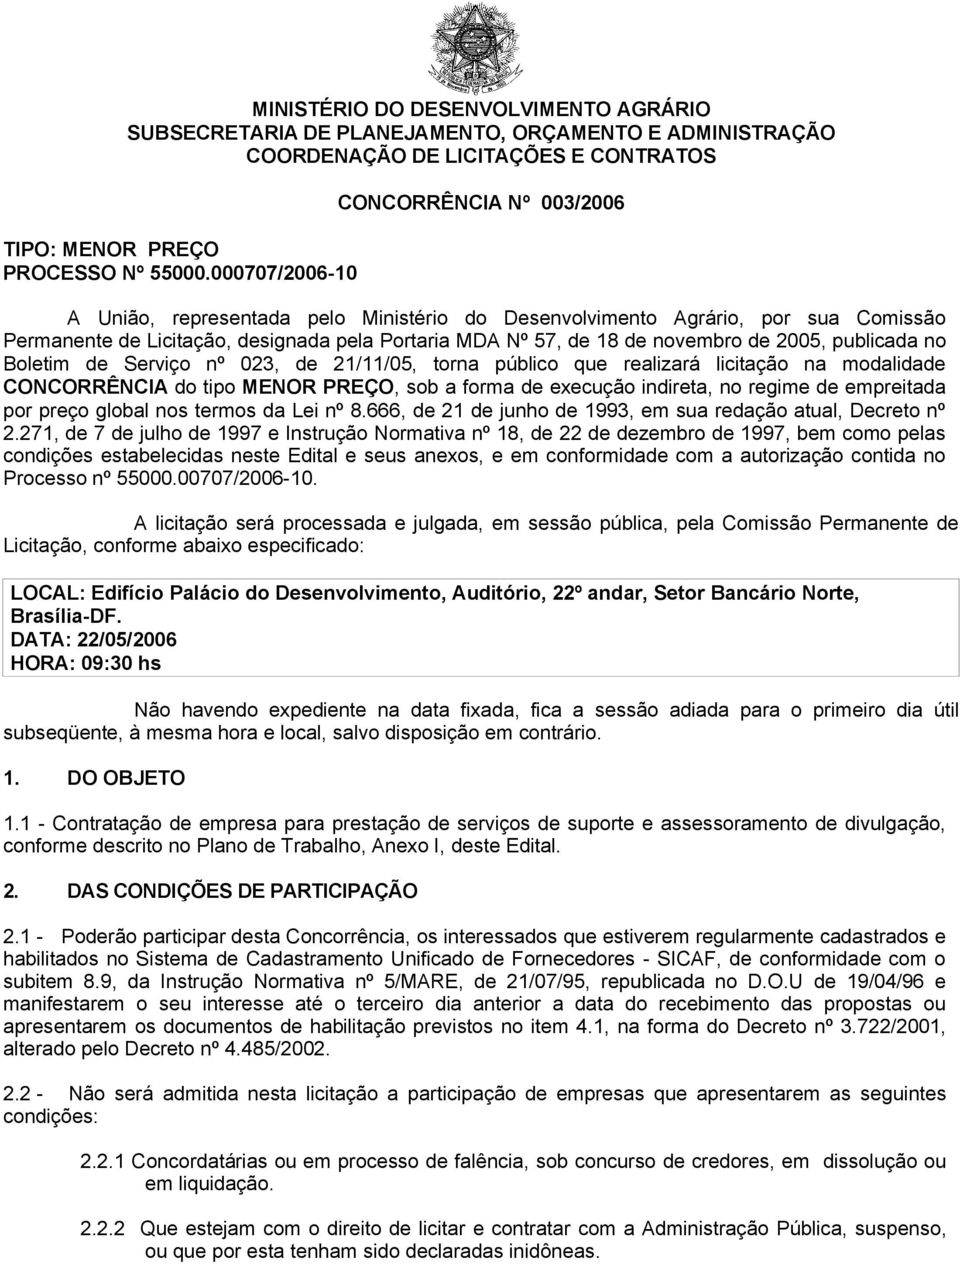 novembro de 2005, publicada no Boletim de Serviço nº 023, de 21/11/05, torna público que realizará licitação na modalidade CONCORRÊNCIA do tipo MENOR PREÇO, sob a forma de execução indireta, no